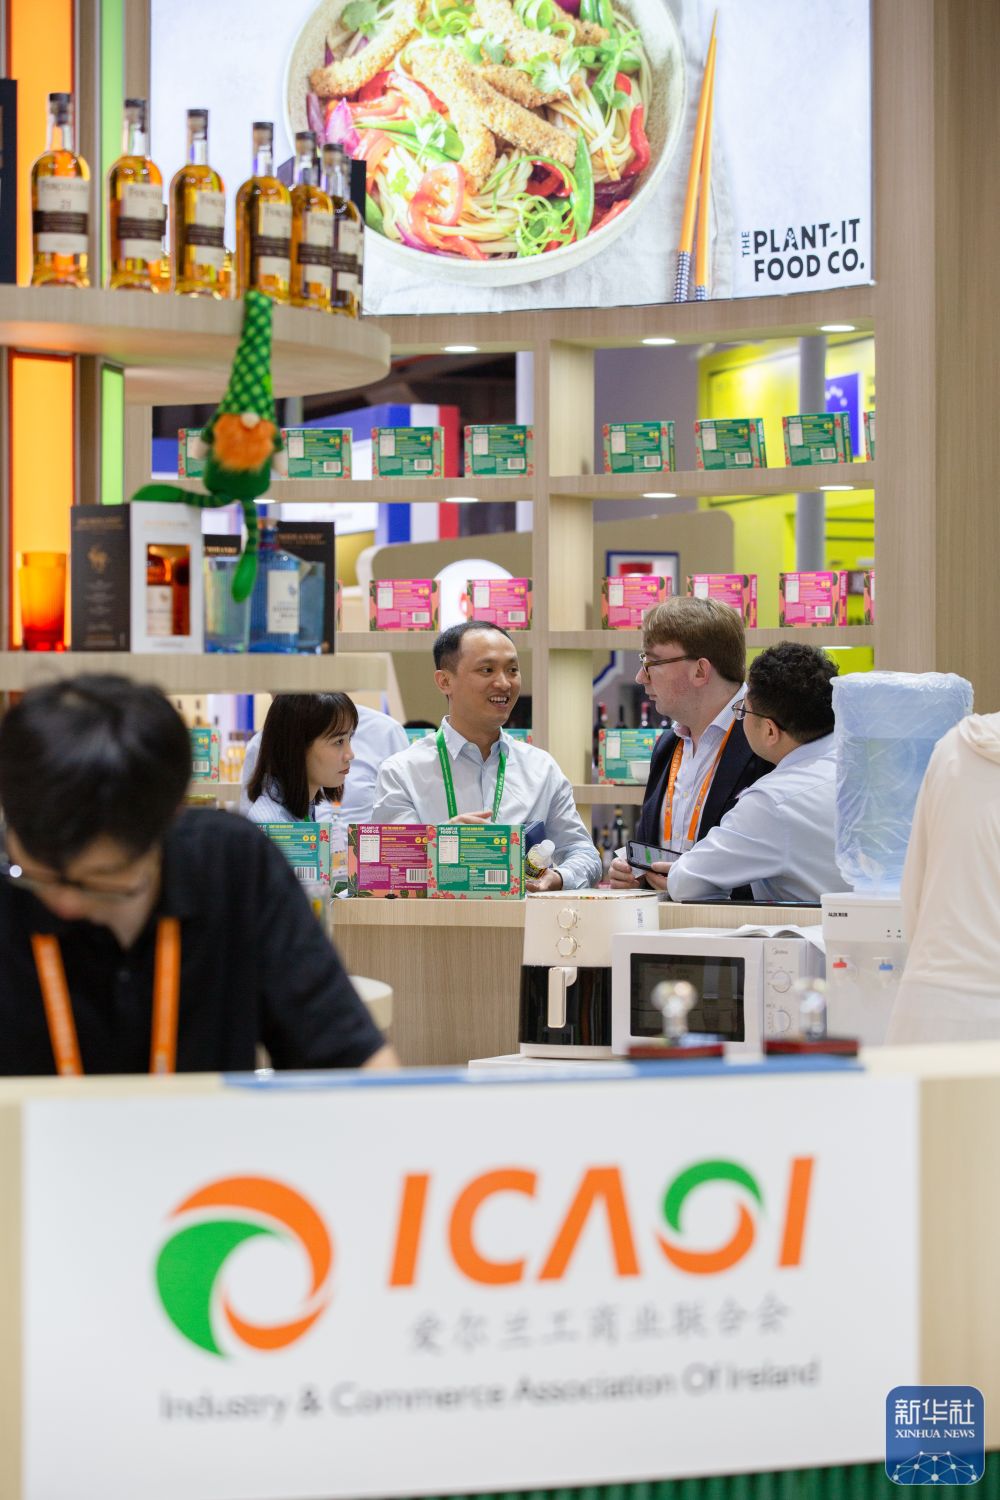 第四届中国国际消费品博览会暨全球消费创新系列活动在海南海口启动